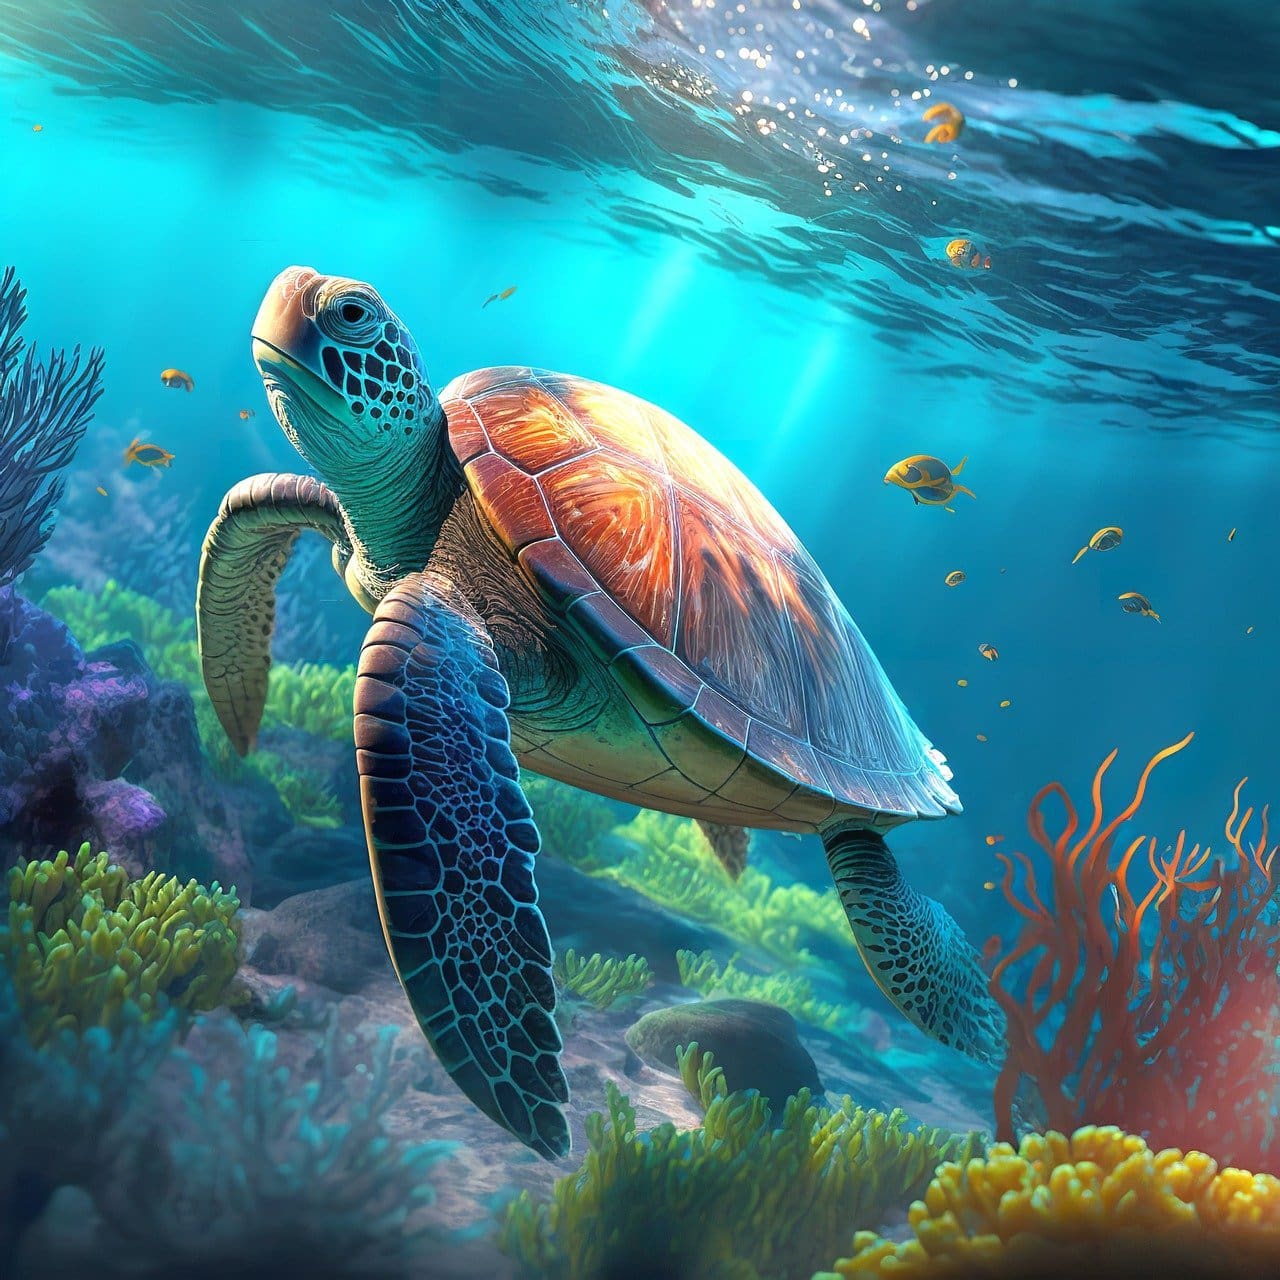 florida sea turtles are a beacon